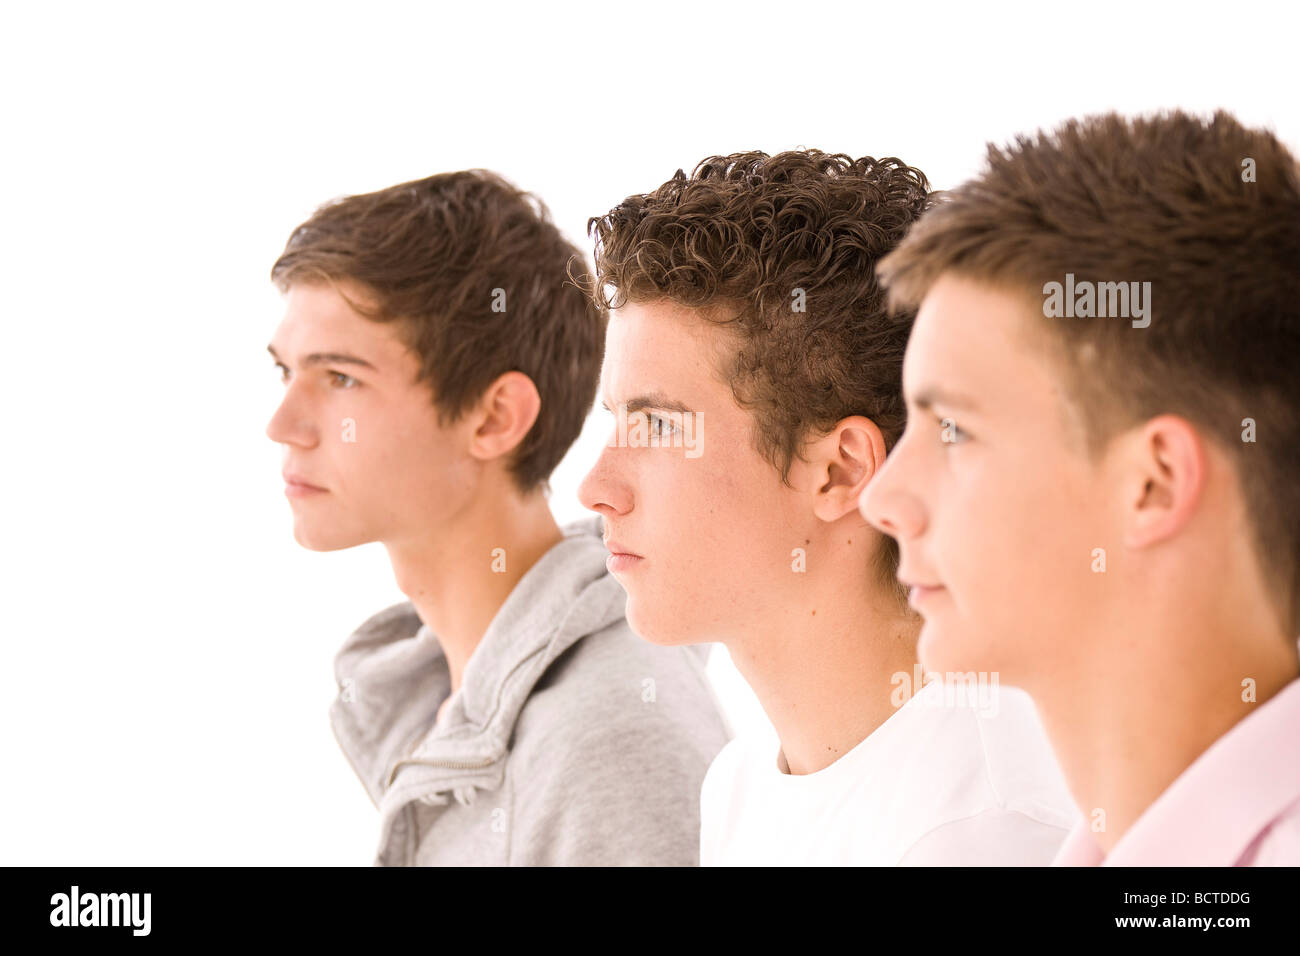 Three boys next to each other, profiles Stock Photo